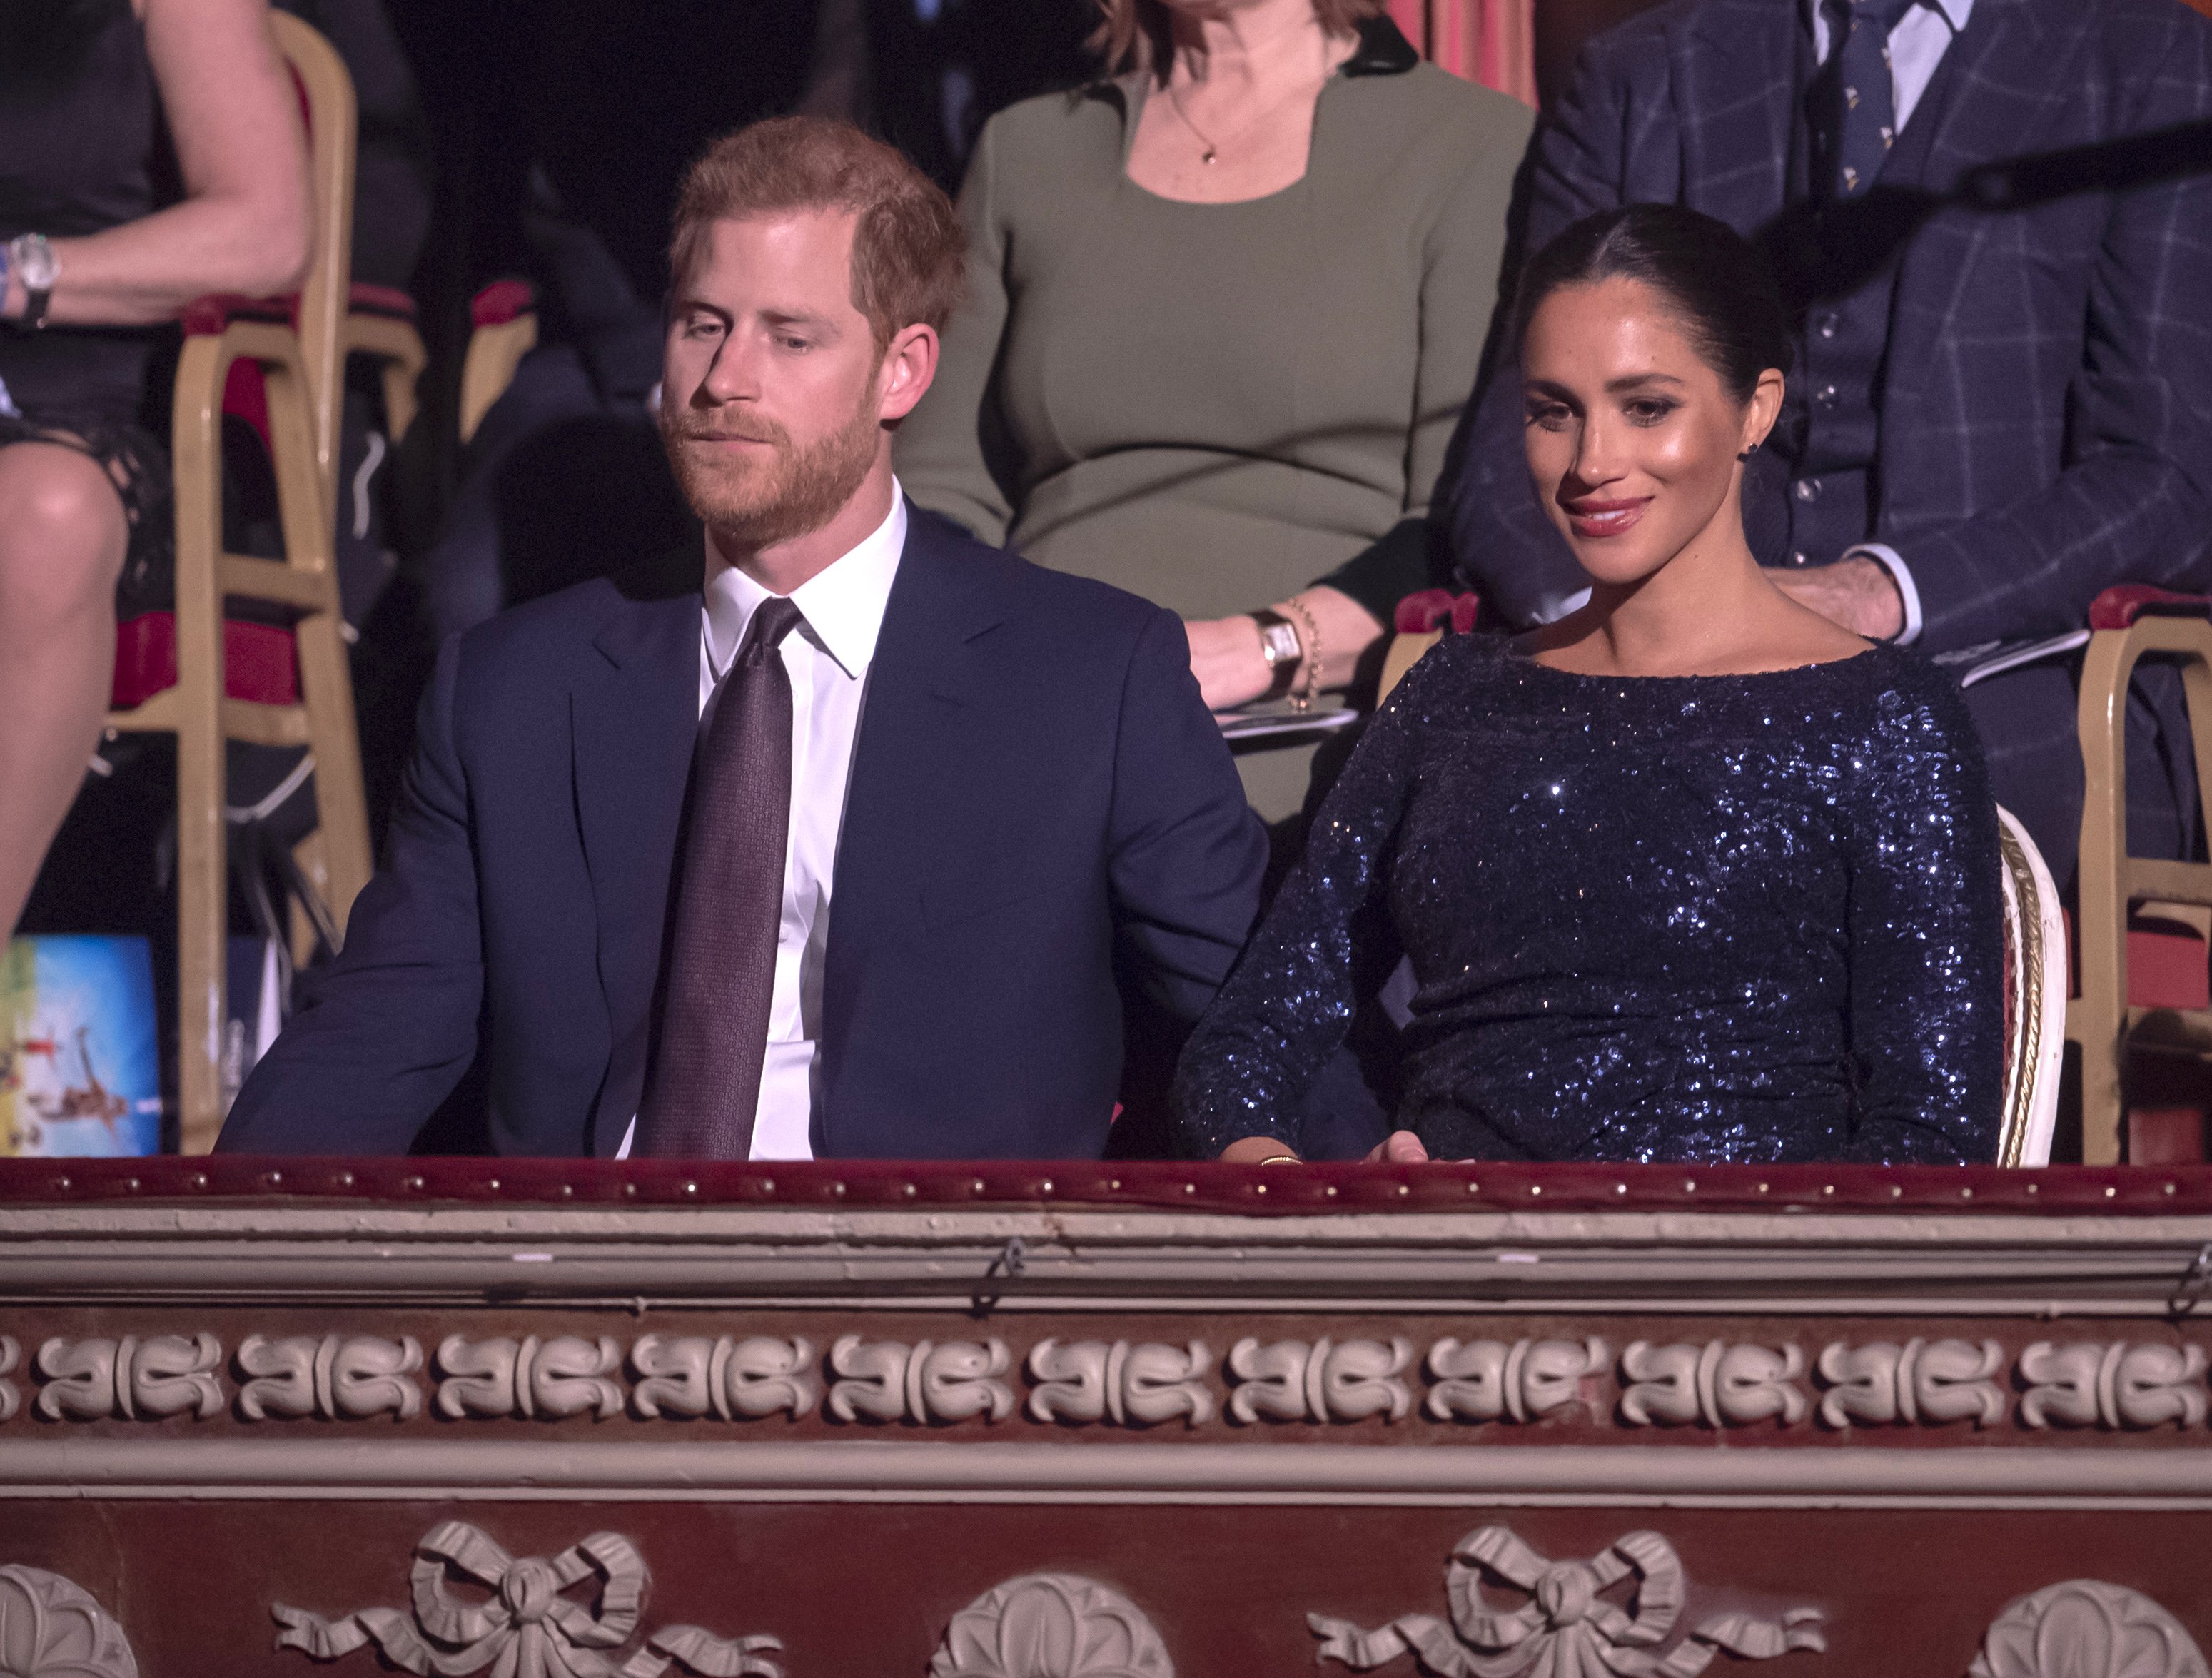 Le prince Harry et Meghan Markle au Royal Albert Hall le 16 janvier 2019 à Londres, Angleterre | Source : Getty Images